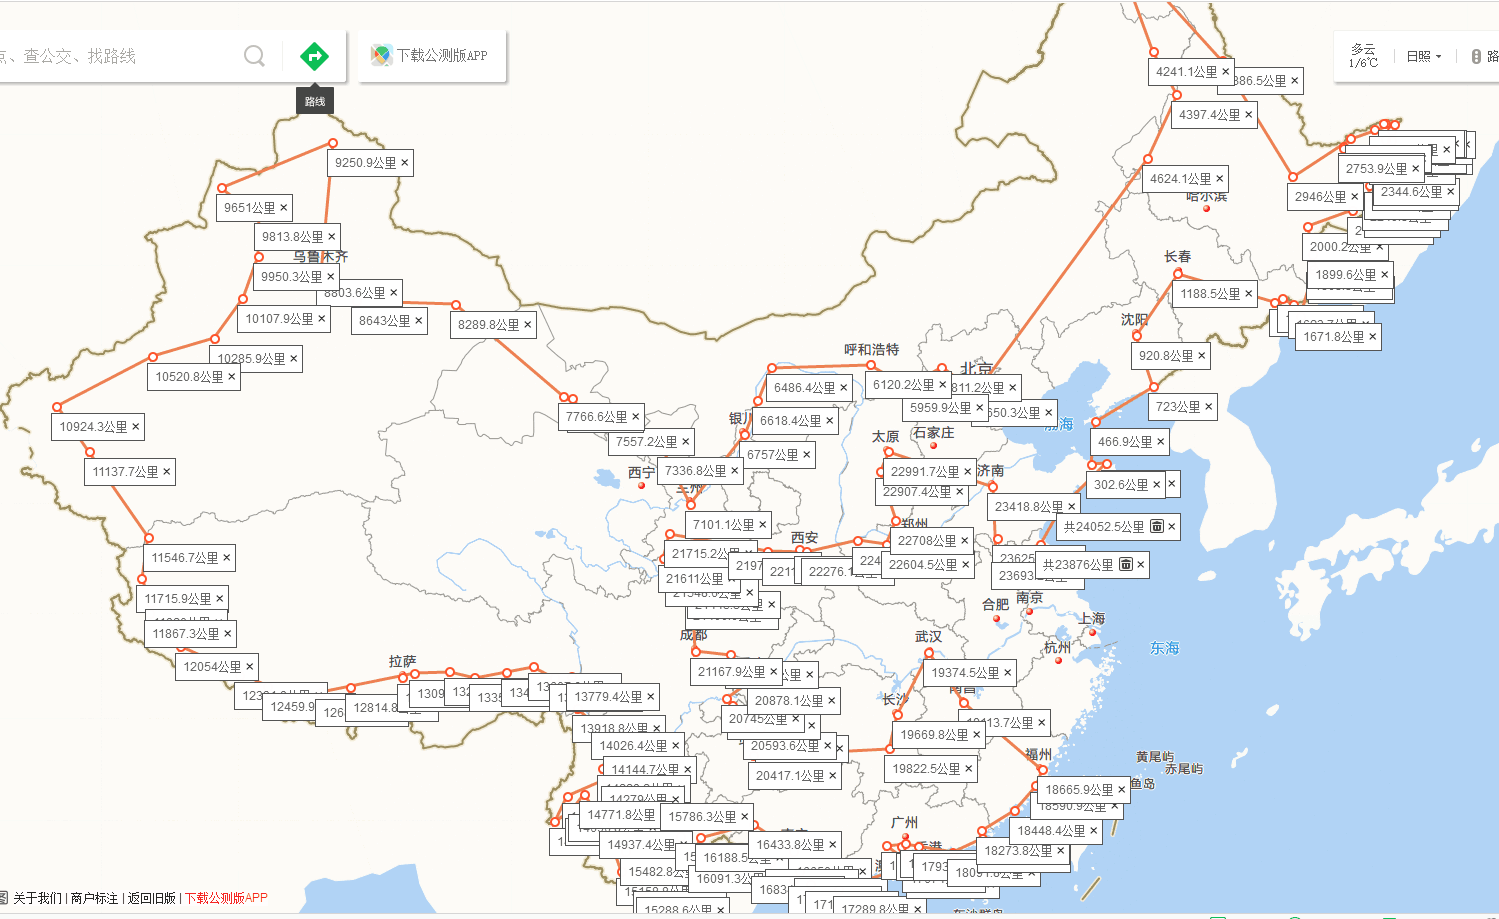 中国目前环华骑行的有多少在环华的路上有哪些有趣的故事呢